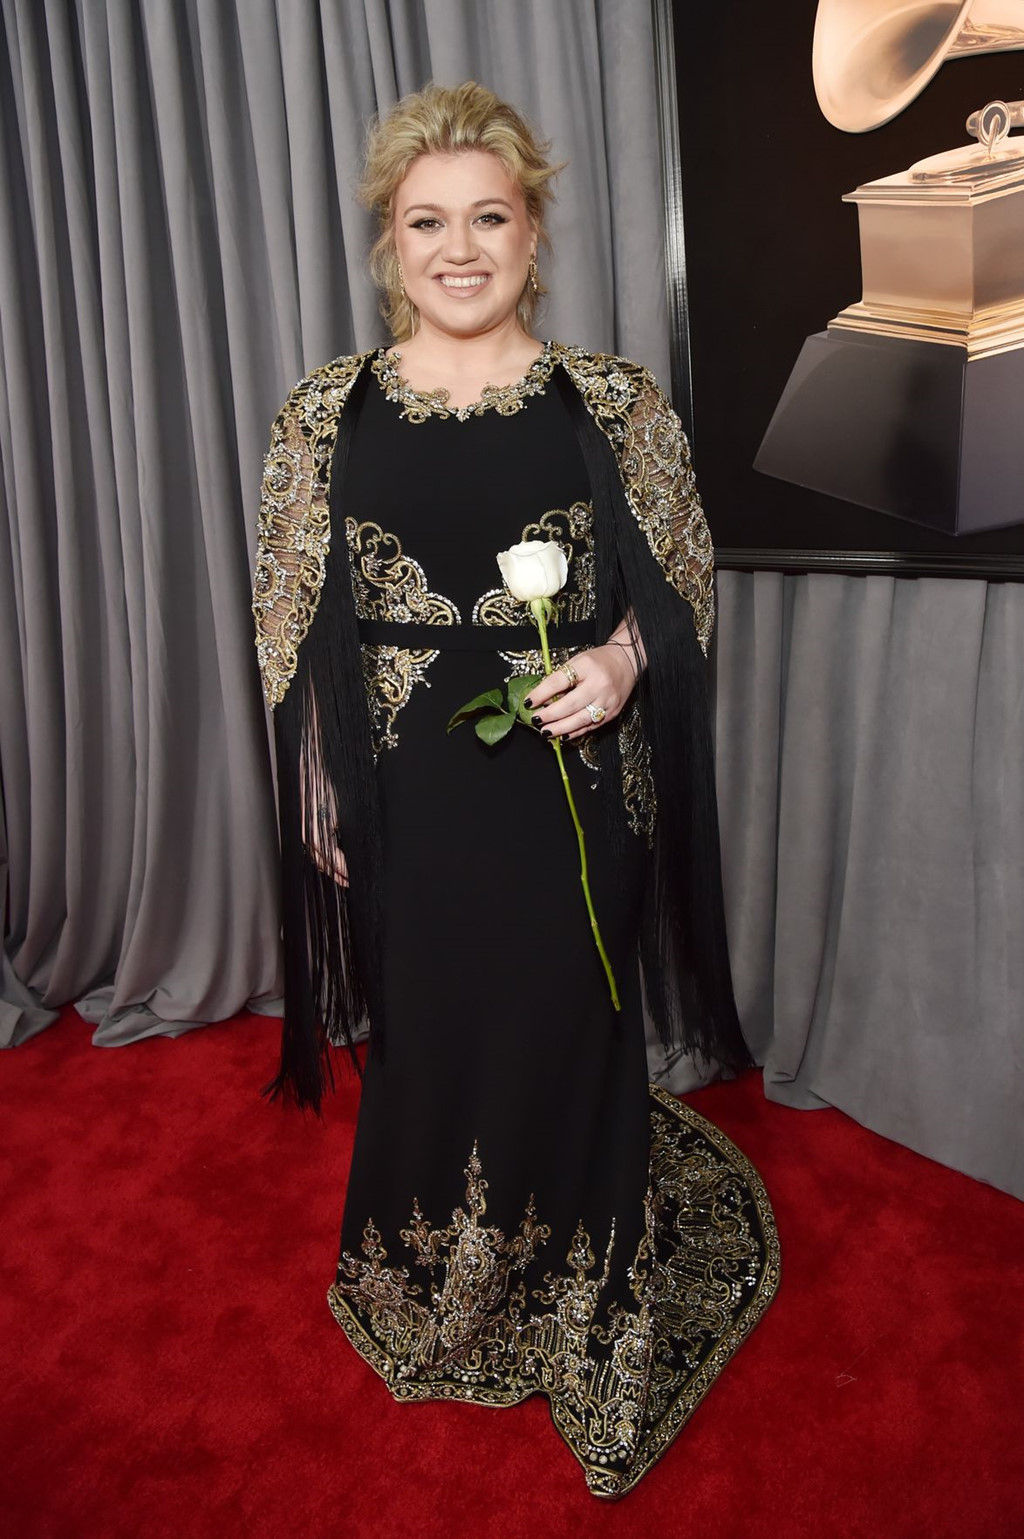 Kelly Clarkson cũng cầm bông hồng trắng trên tay, góp chung tiếng nói phản đối lạm dụng tình dục, đòi quyền bình đẳng cho phụ nữ. 